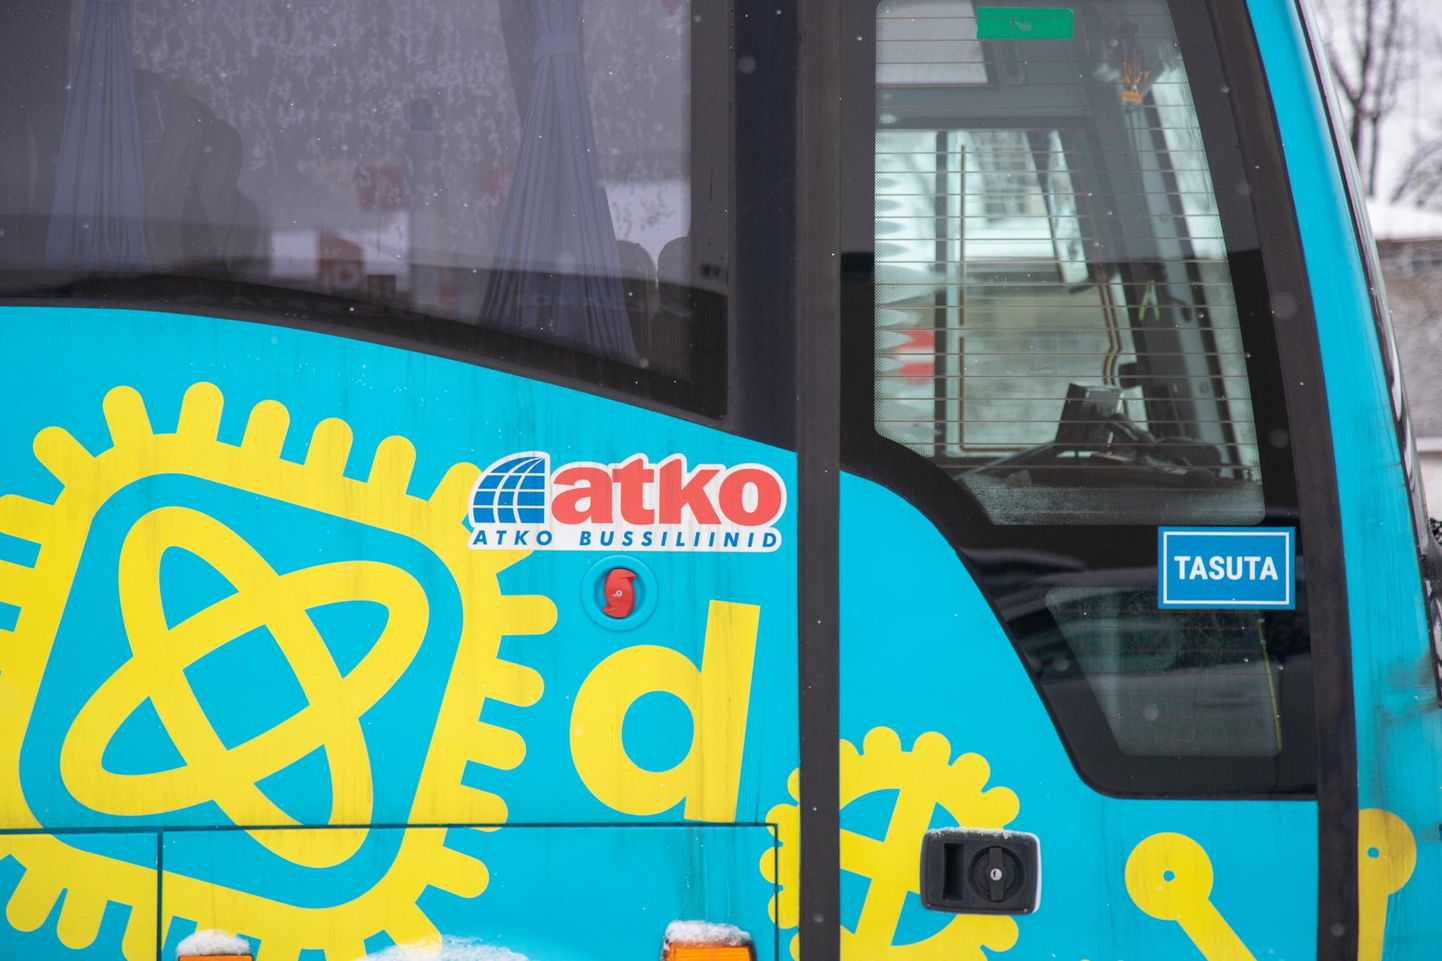 Üks Atko Bussiliini bussidest oli eelmise aasta lõpul ja alanud aasta hakul rivist väljas, sest sel purunes teel oleva suure kiviga kokkupõrkamise tagajärjel radiaator.